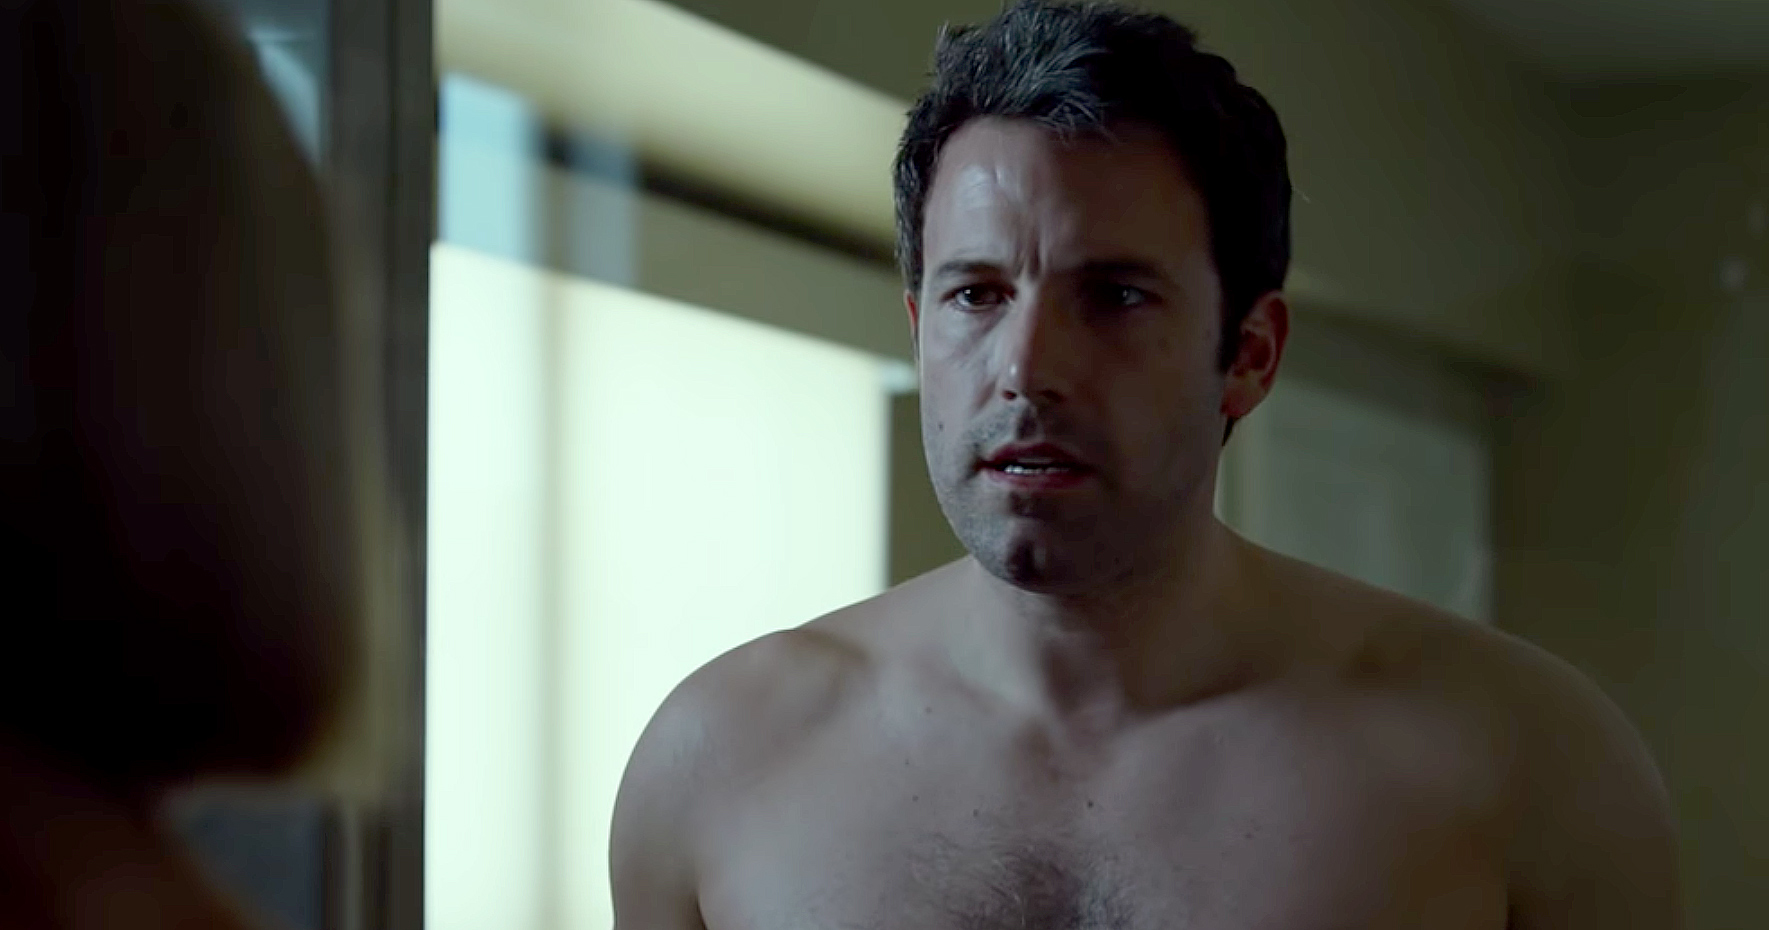 Group Nude Shower Scene Movie - Ben Affleck Jokes His Nude Scene in 'Gone Girl' Was 'Overlooked'